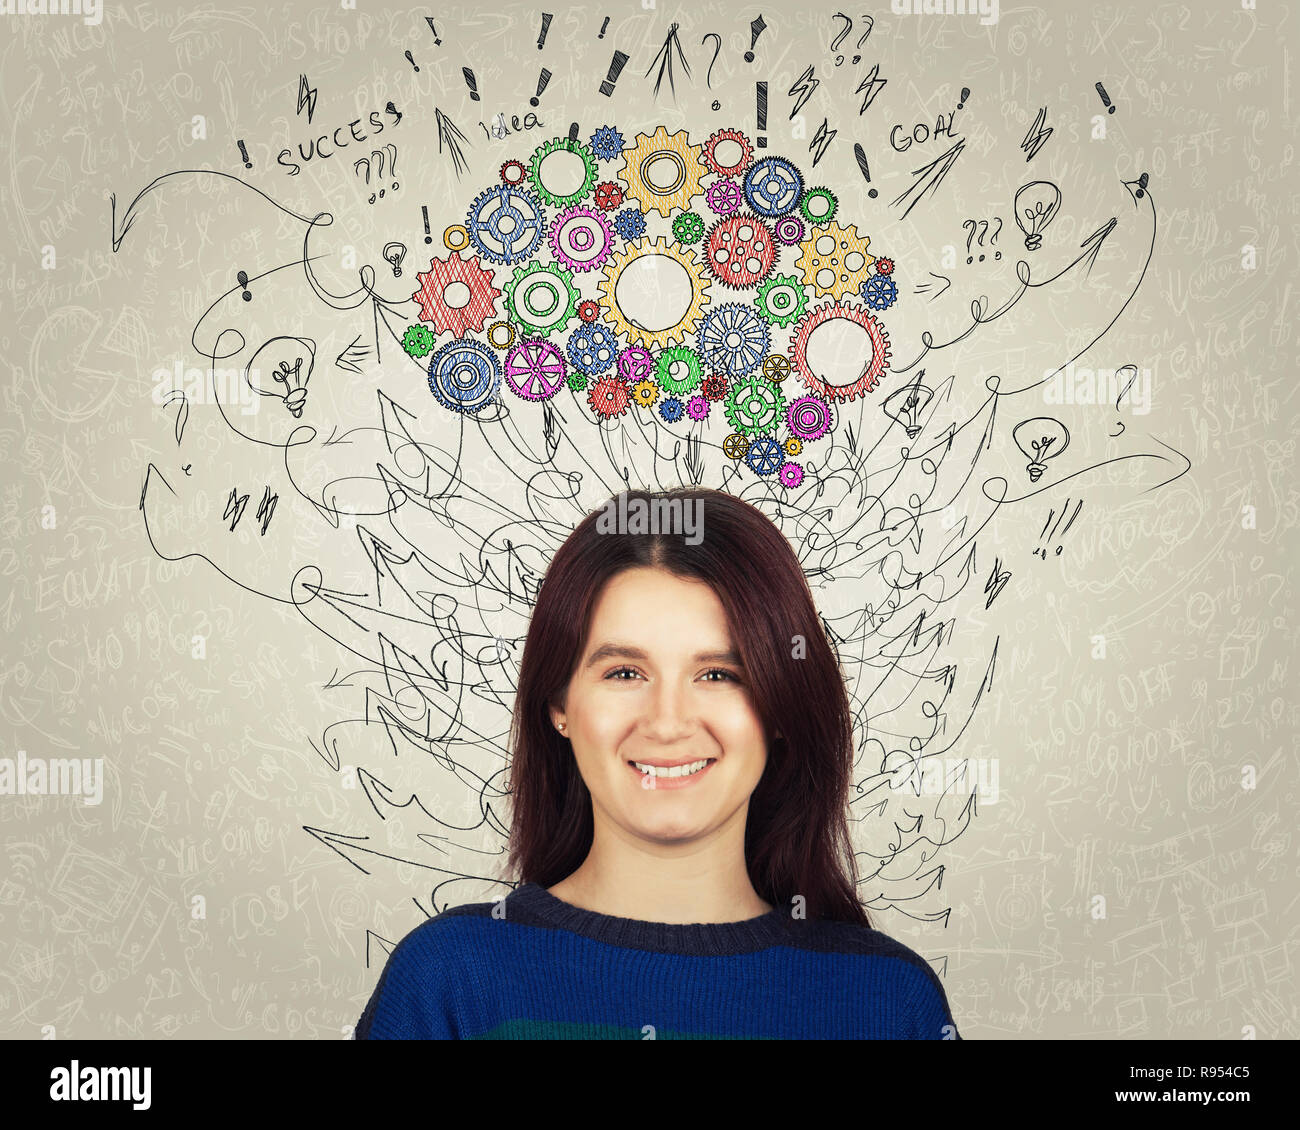 Portrait d'une jeune femme avec cerveau pignon coloré au-dessus de la tête. Professionnels de l'émotion, la pensée positive avec des flèches et des courbes comme pensées. F Concept Banque D'Images